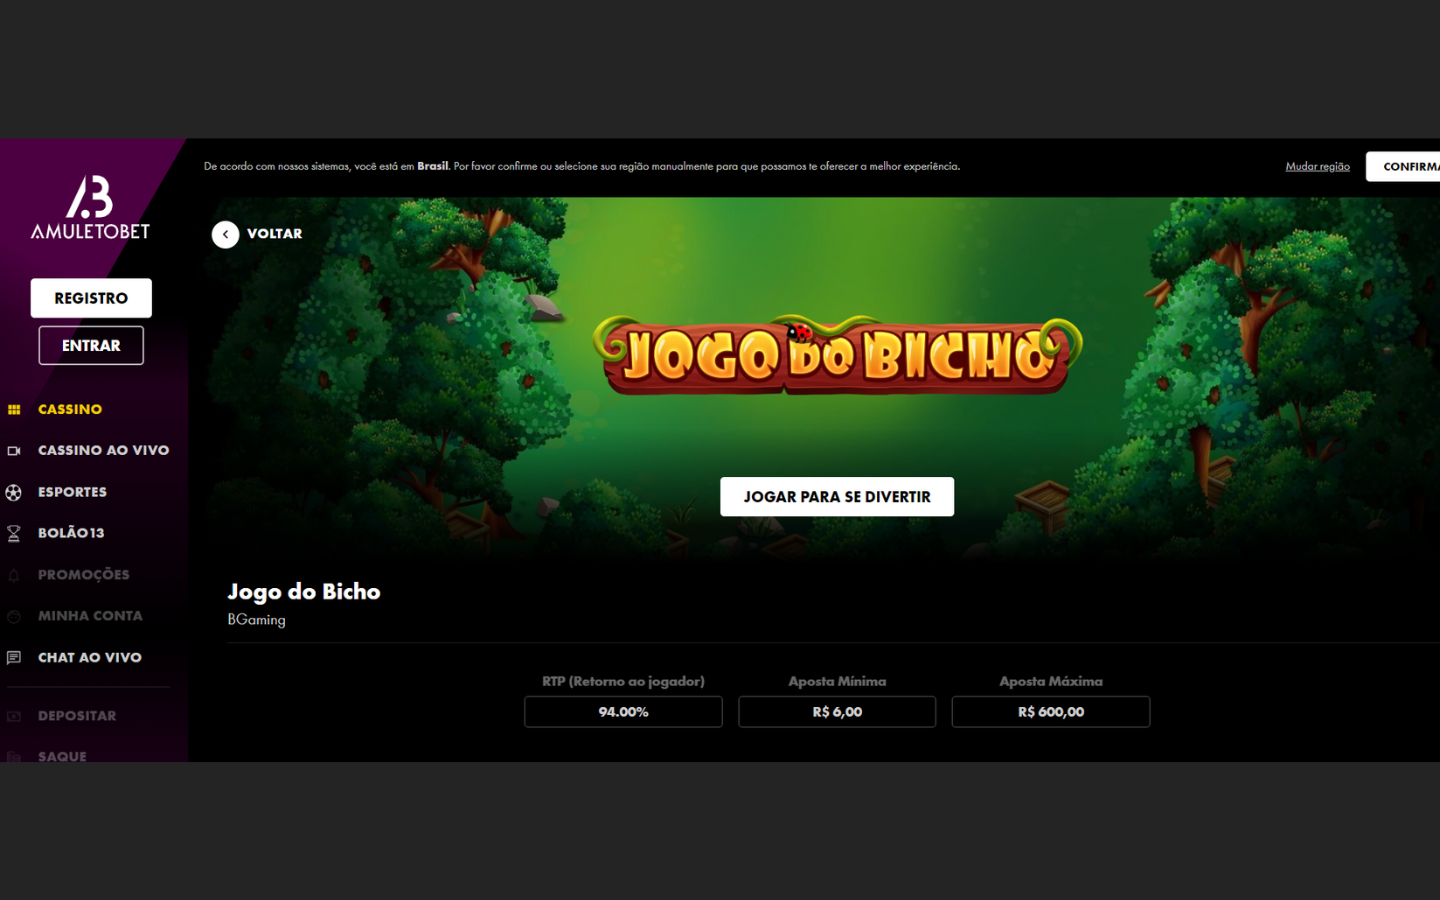 Jogo do Bicho online: Os melhores sites para jogar!